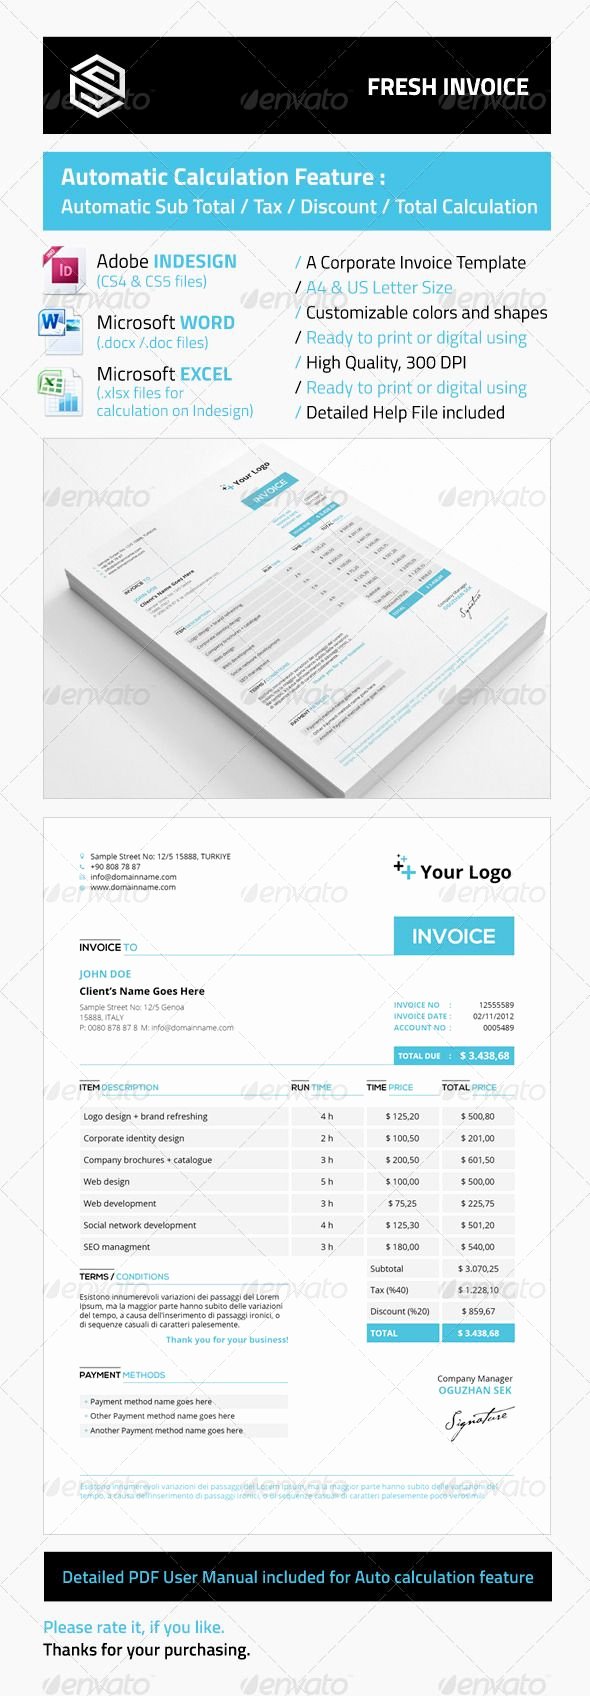 Free Indesign Invoice Template Elegant Fresh Invoice